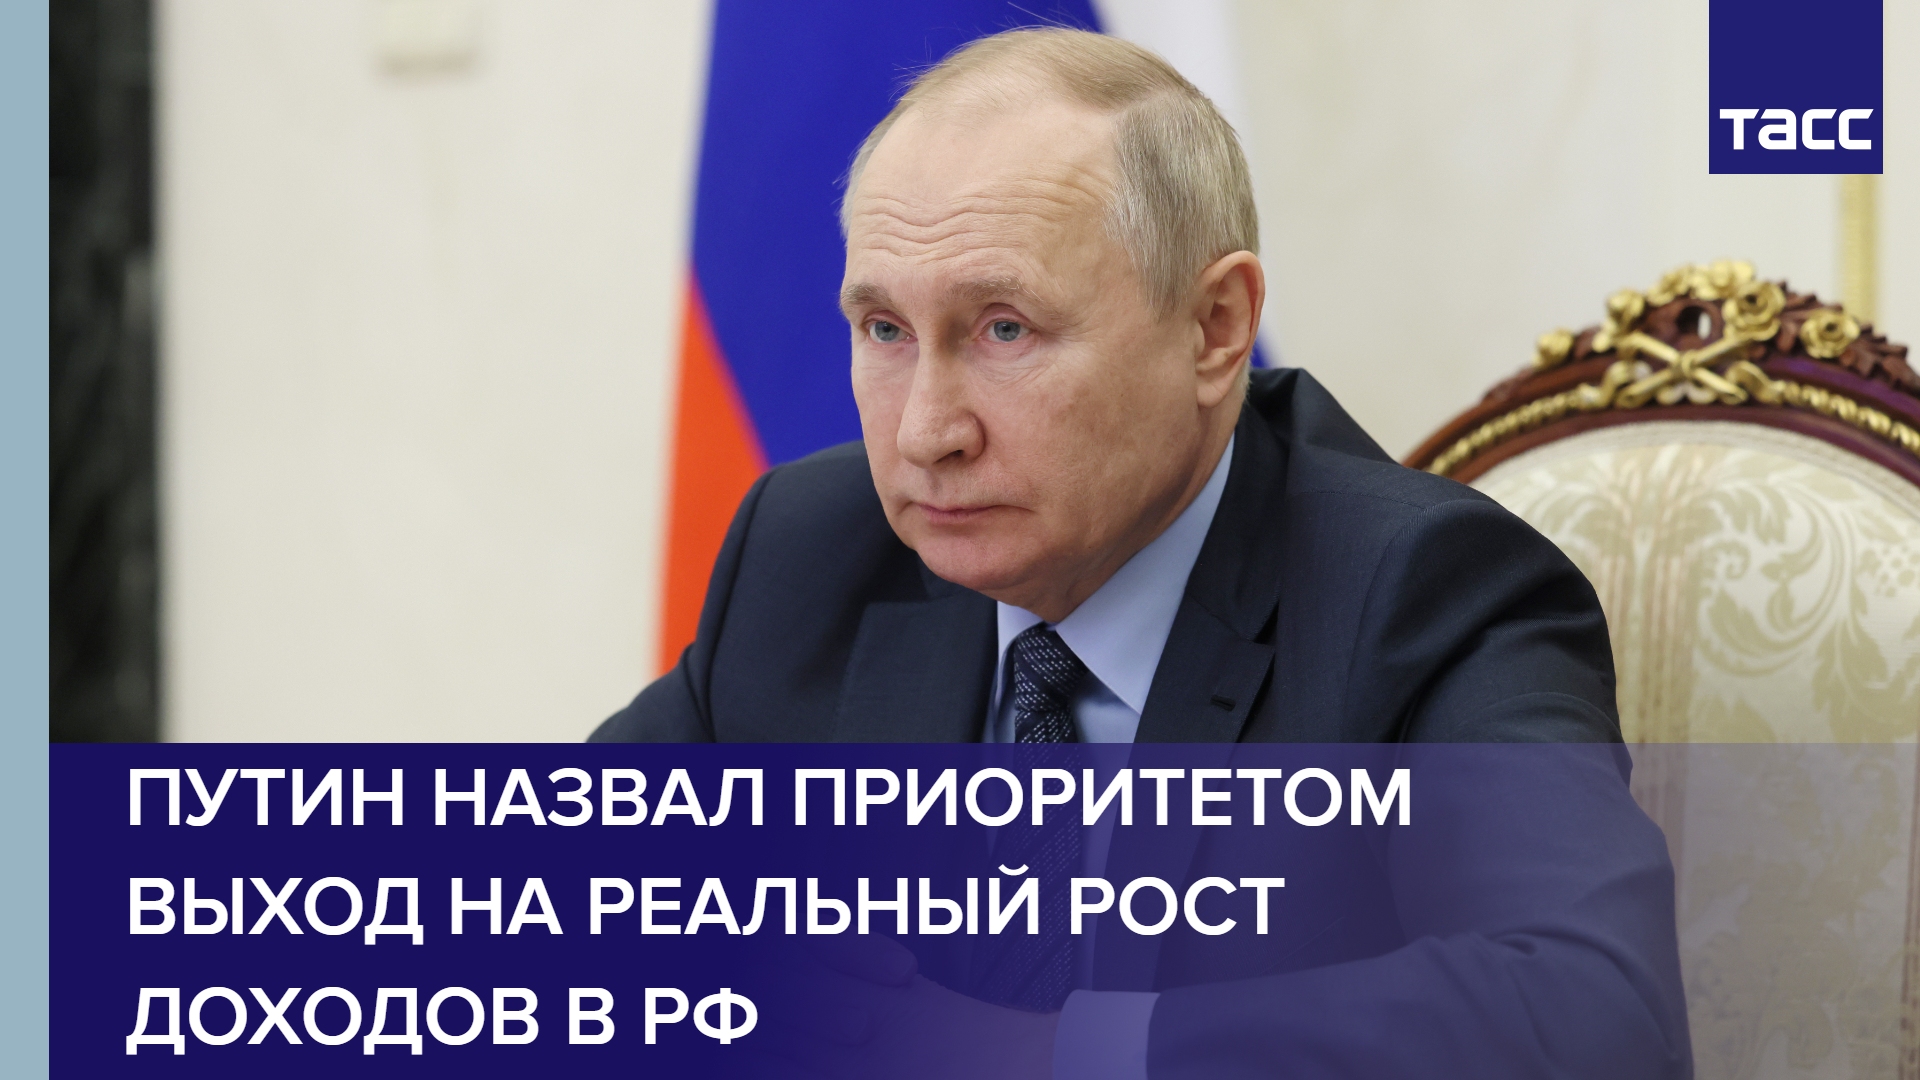 Путин назвал приоритетом выход на реальный рост доходов в РФ